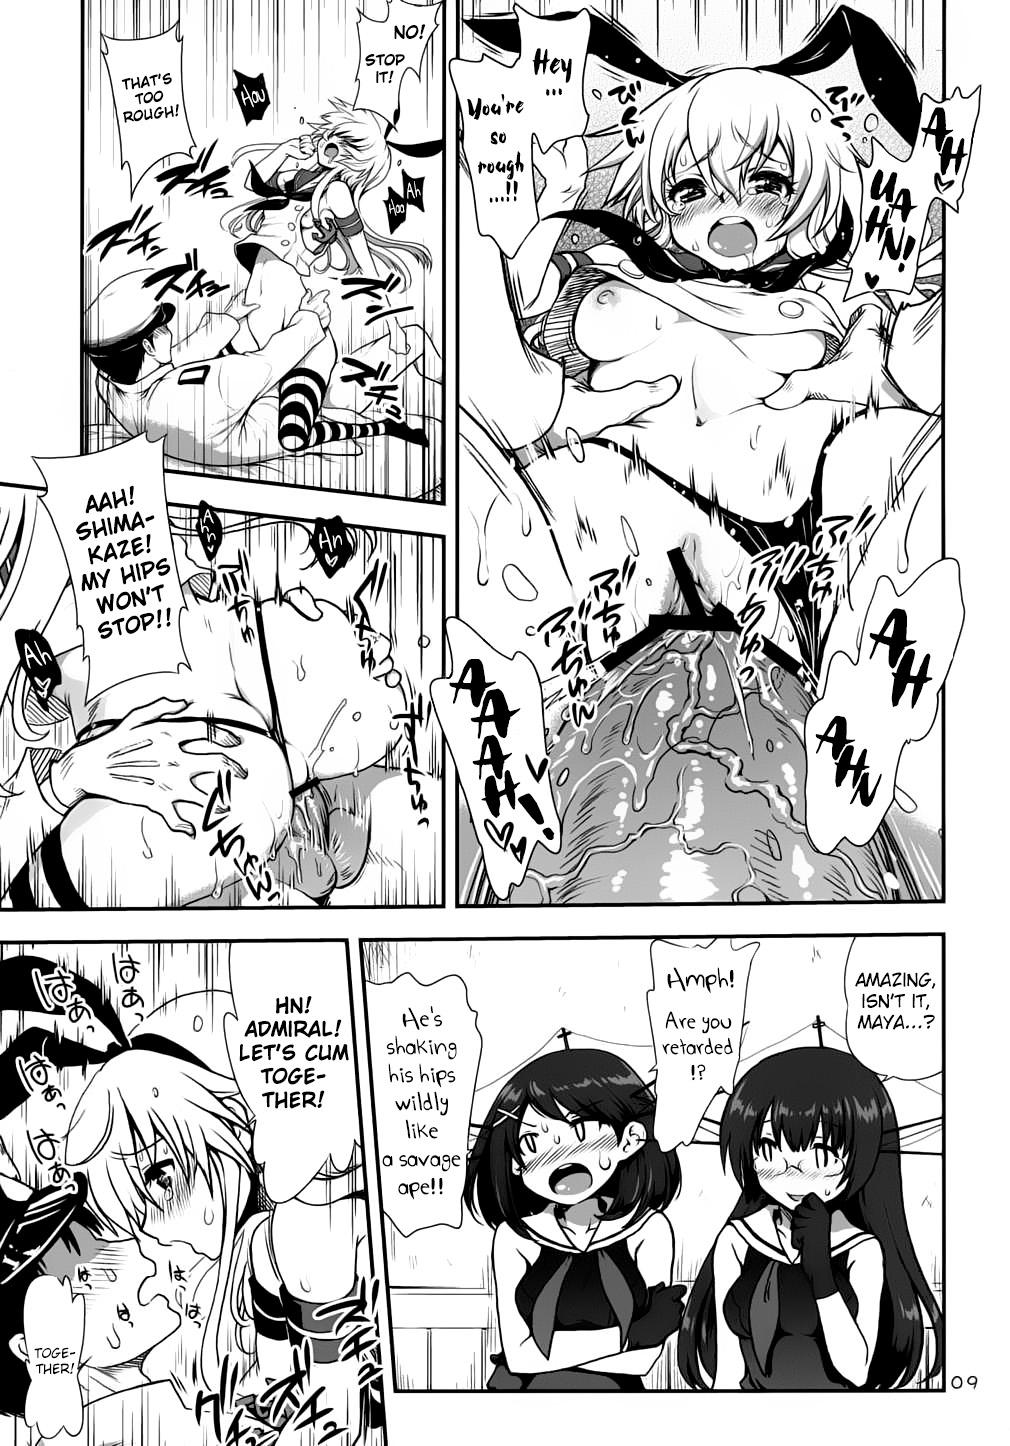 Casada a hack aim you Shimakaze Choukai no Daisakusen! Maya-sama o Kaijuu seyo!! - Kantai collection Dicks - Page 8